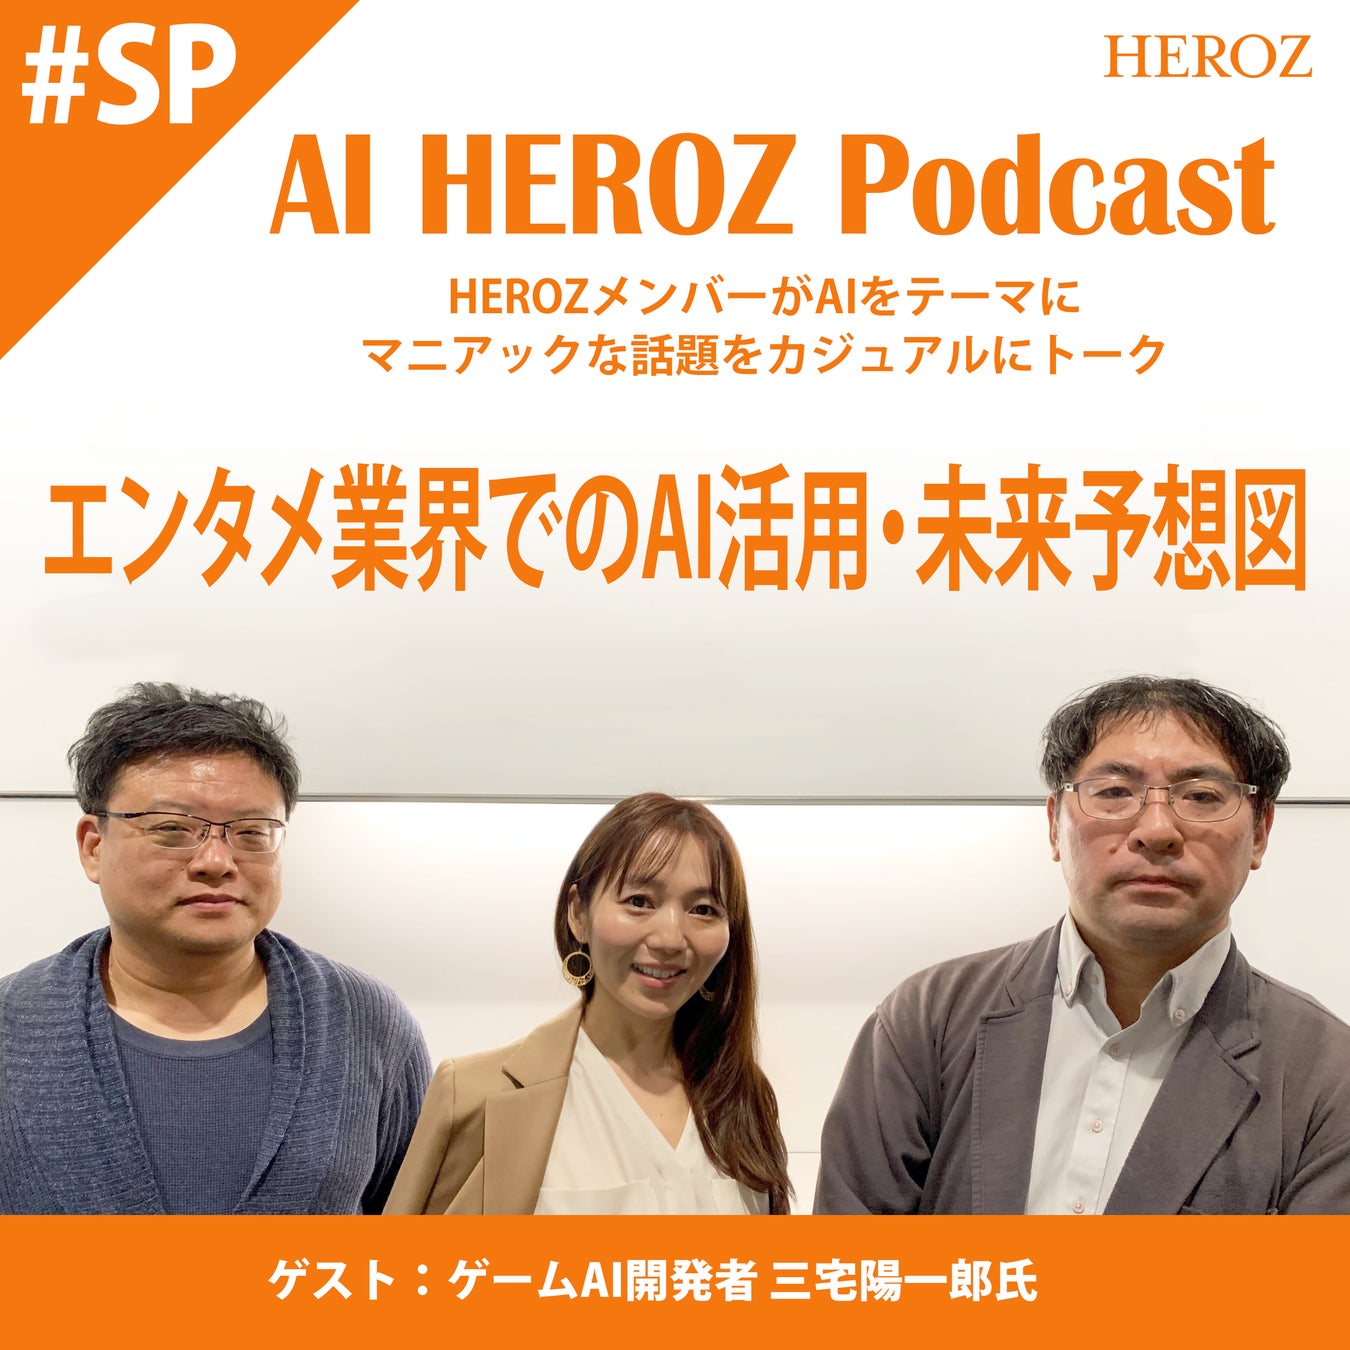 ゲームAI開発第一人者である三宅陽一郎氏をゲストに迎え、「エンタメ業界でのAI活用・未来予想図」をテーマにした『AI HEROZ Podcast』新番組を公開